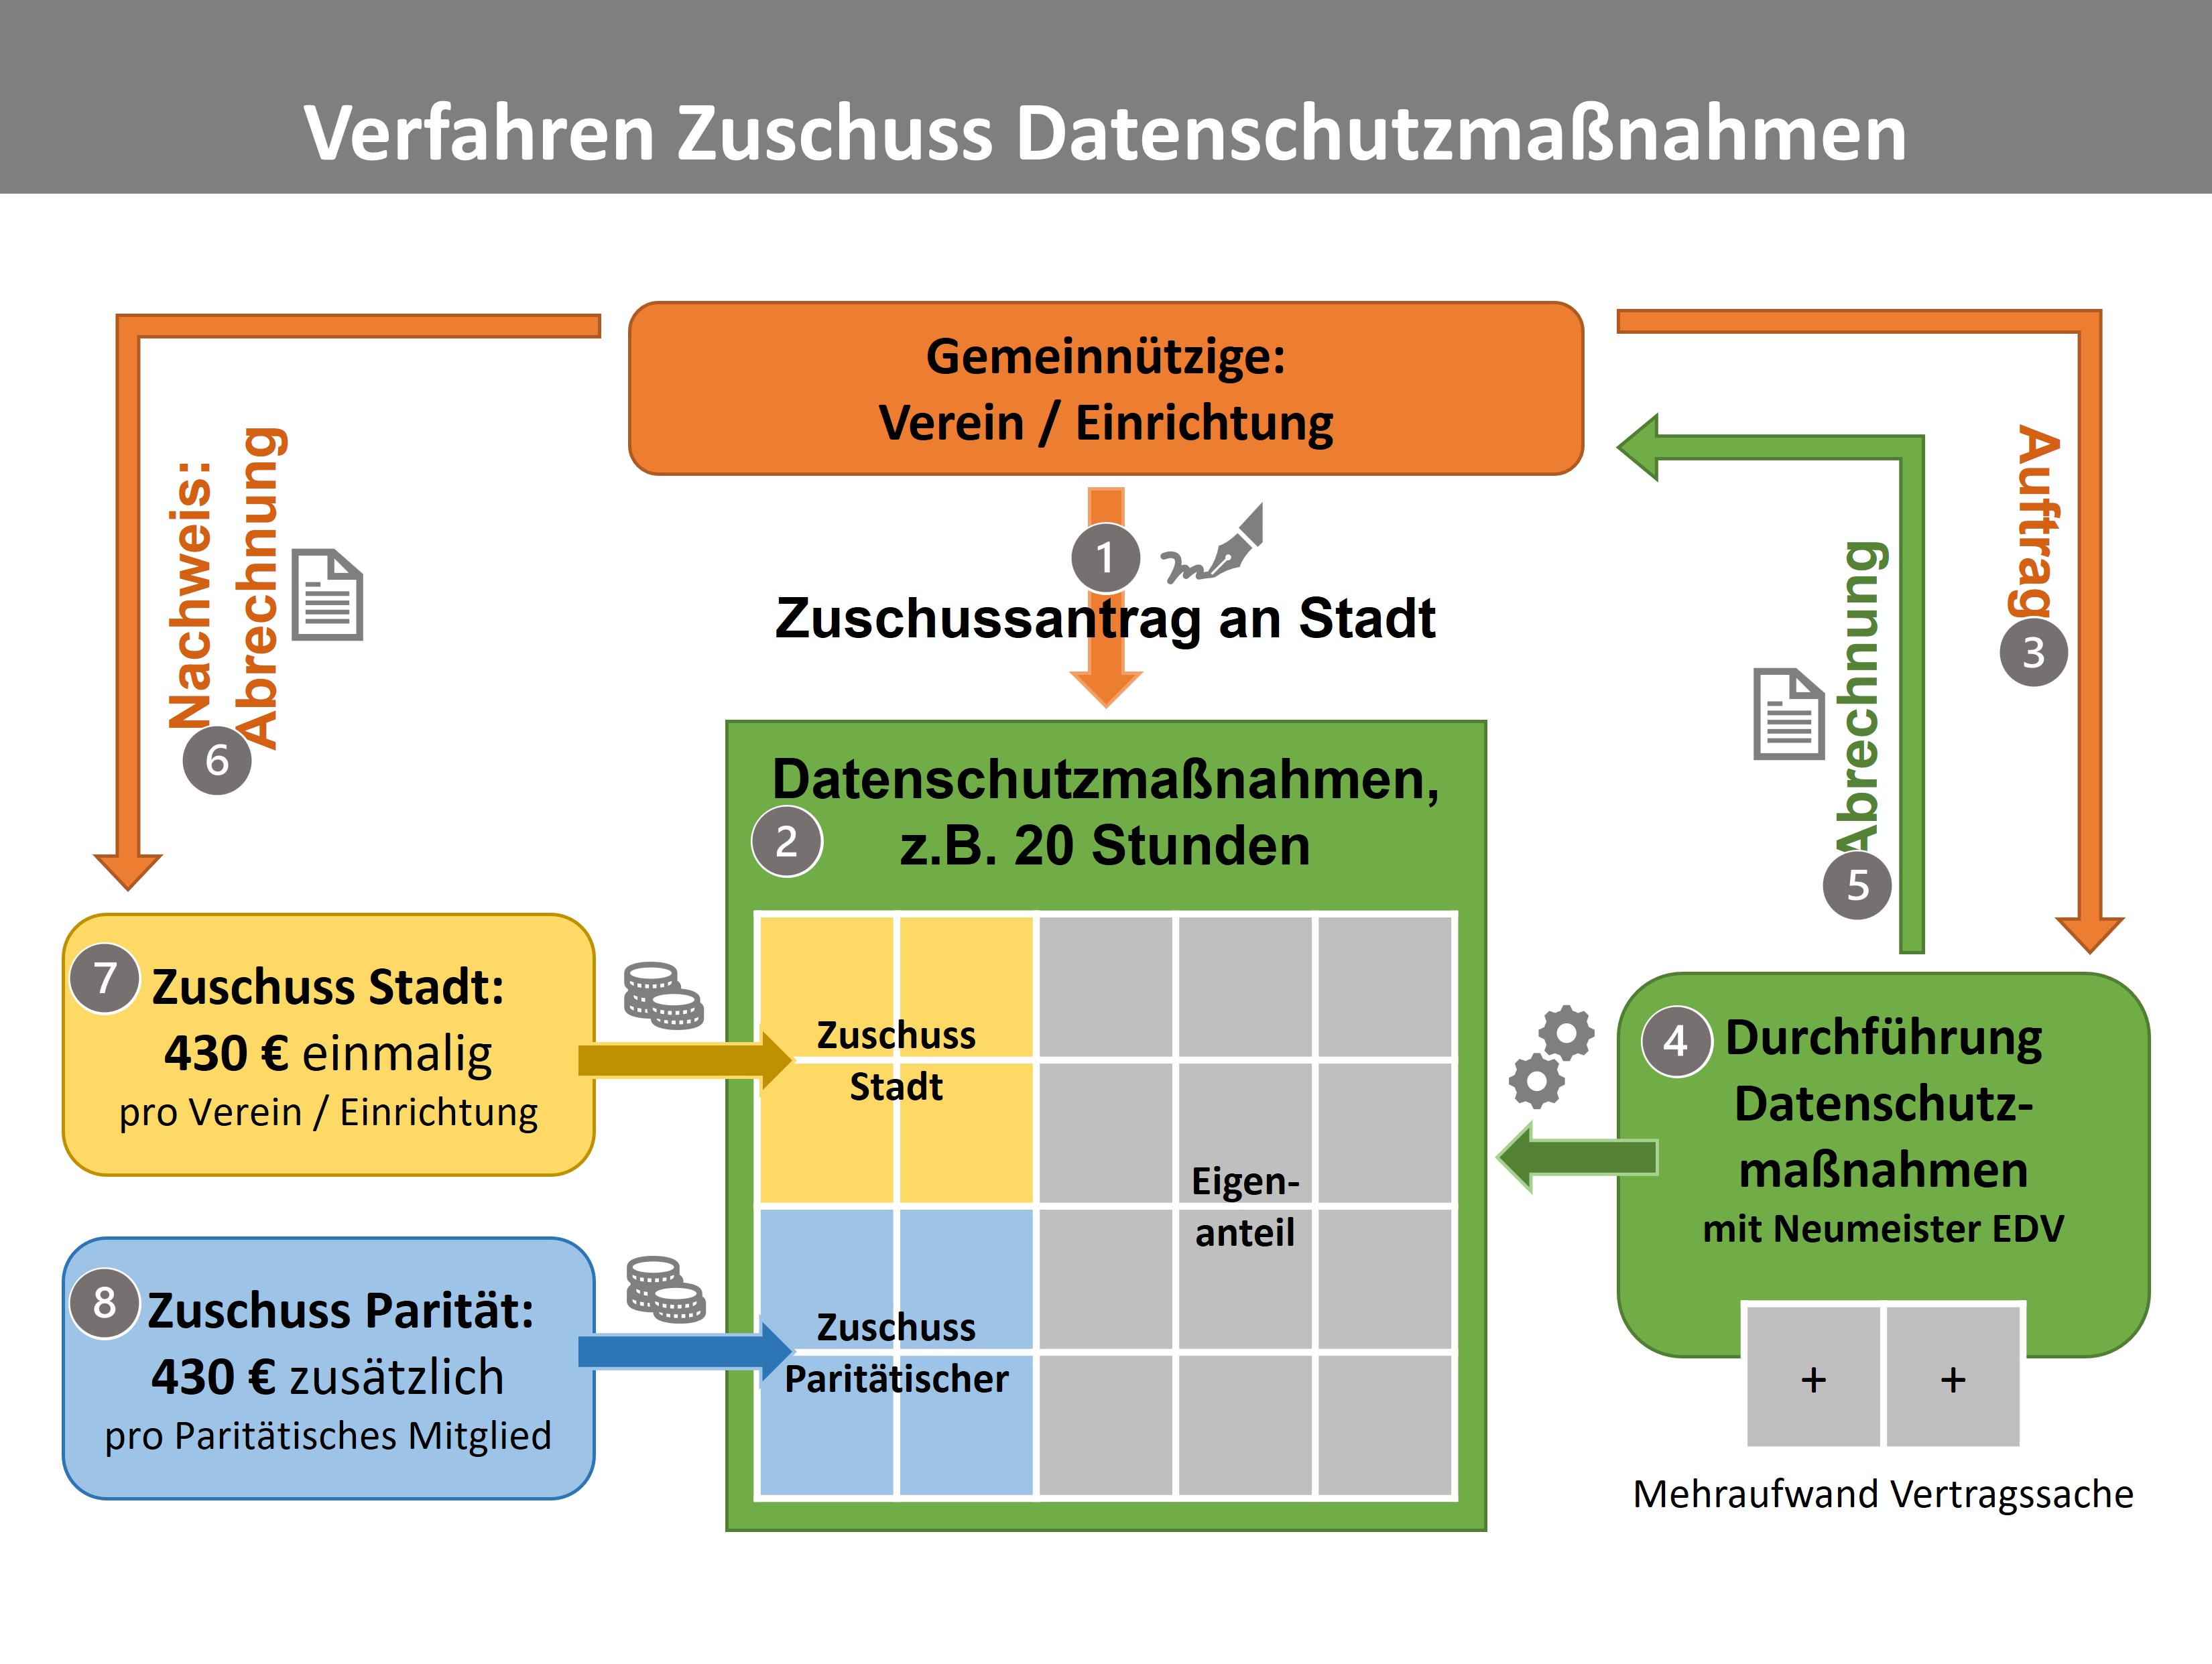 Schematische Darstellung des im Text beschriebenen Verfahrens für den Zuschuss zu Datenschutzmaßnahmen